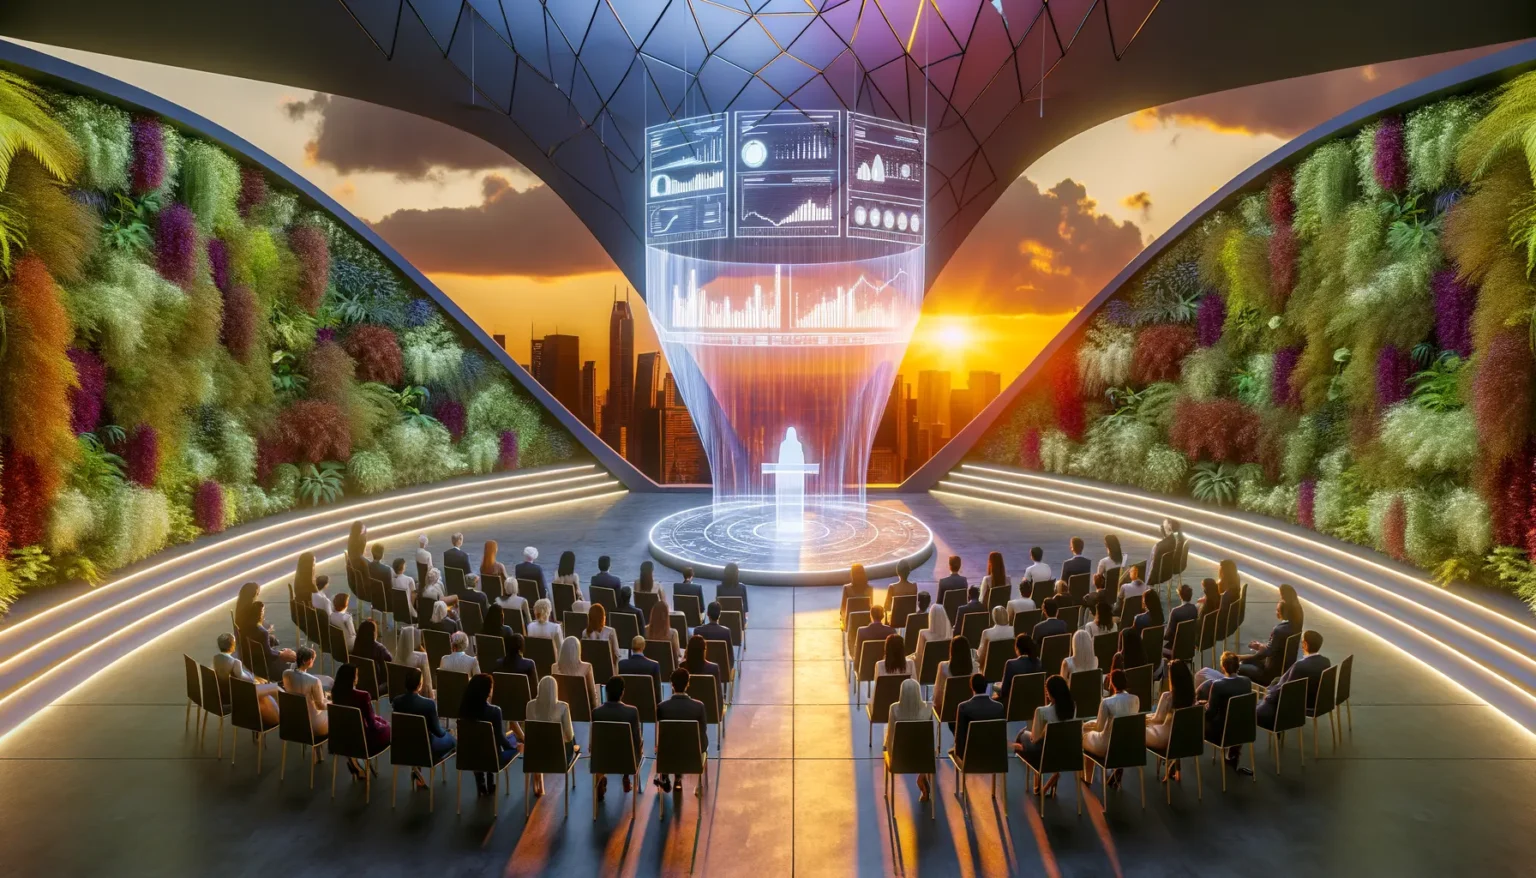 Ein futuristischer Vortragssaal mit einem Redner auf einer beleuchteten Plattform, der von holographischen Bildschirmen umgeben ist, die Daten und Grafiken anzeigen. Die Zuhörer sitzen in ordentlichen Reihen auf Stühlen und sind einem urbanen Sonnenuntergangshimmel zugewandt, der durch ein großes Fenster sichtbar ist. Vertikale Gärten flankieren beide Seiten des Raumes.